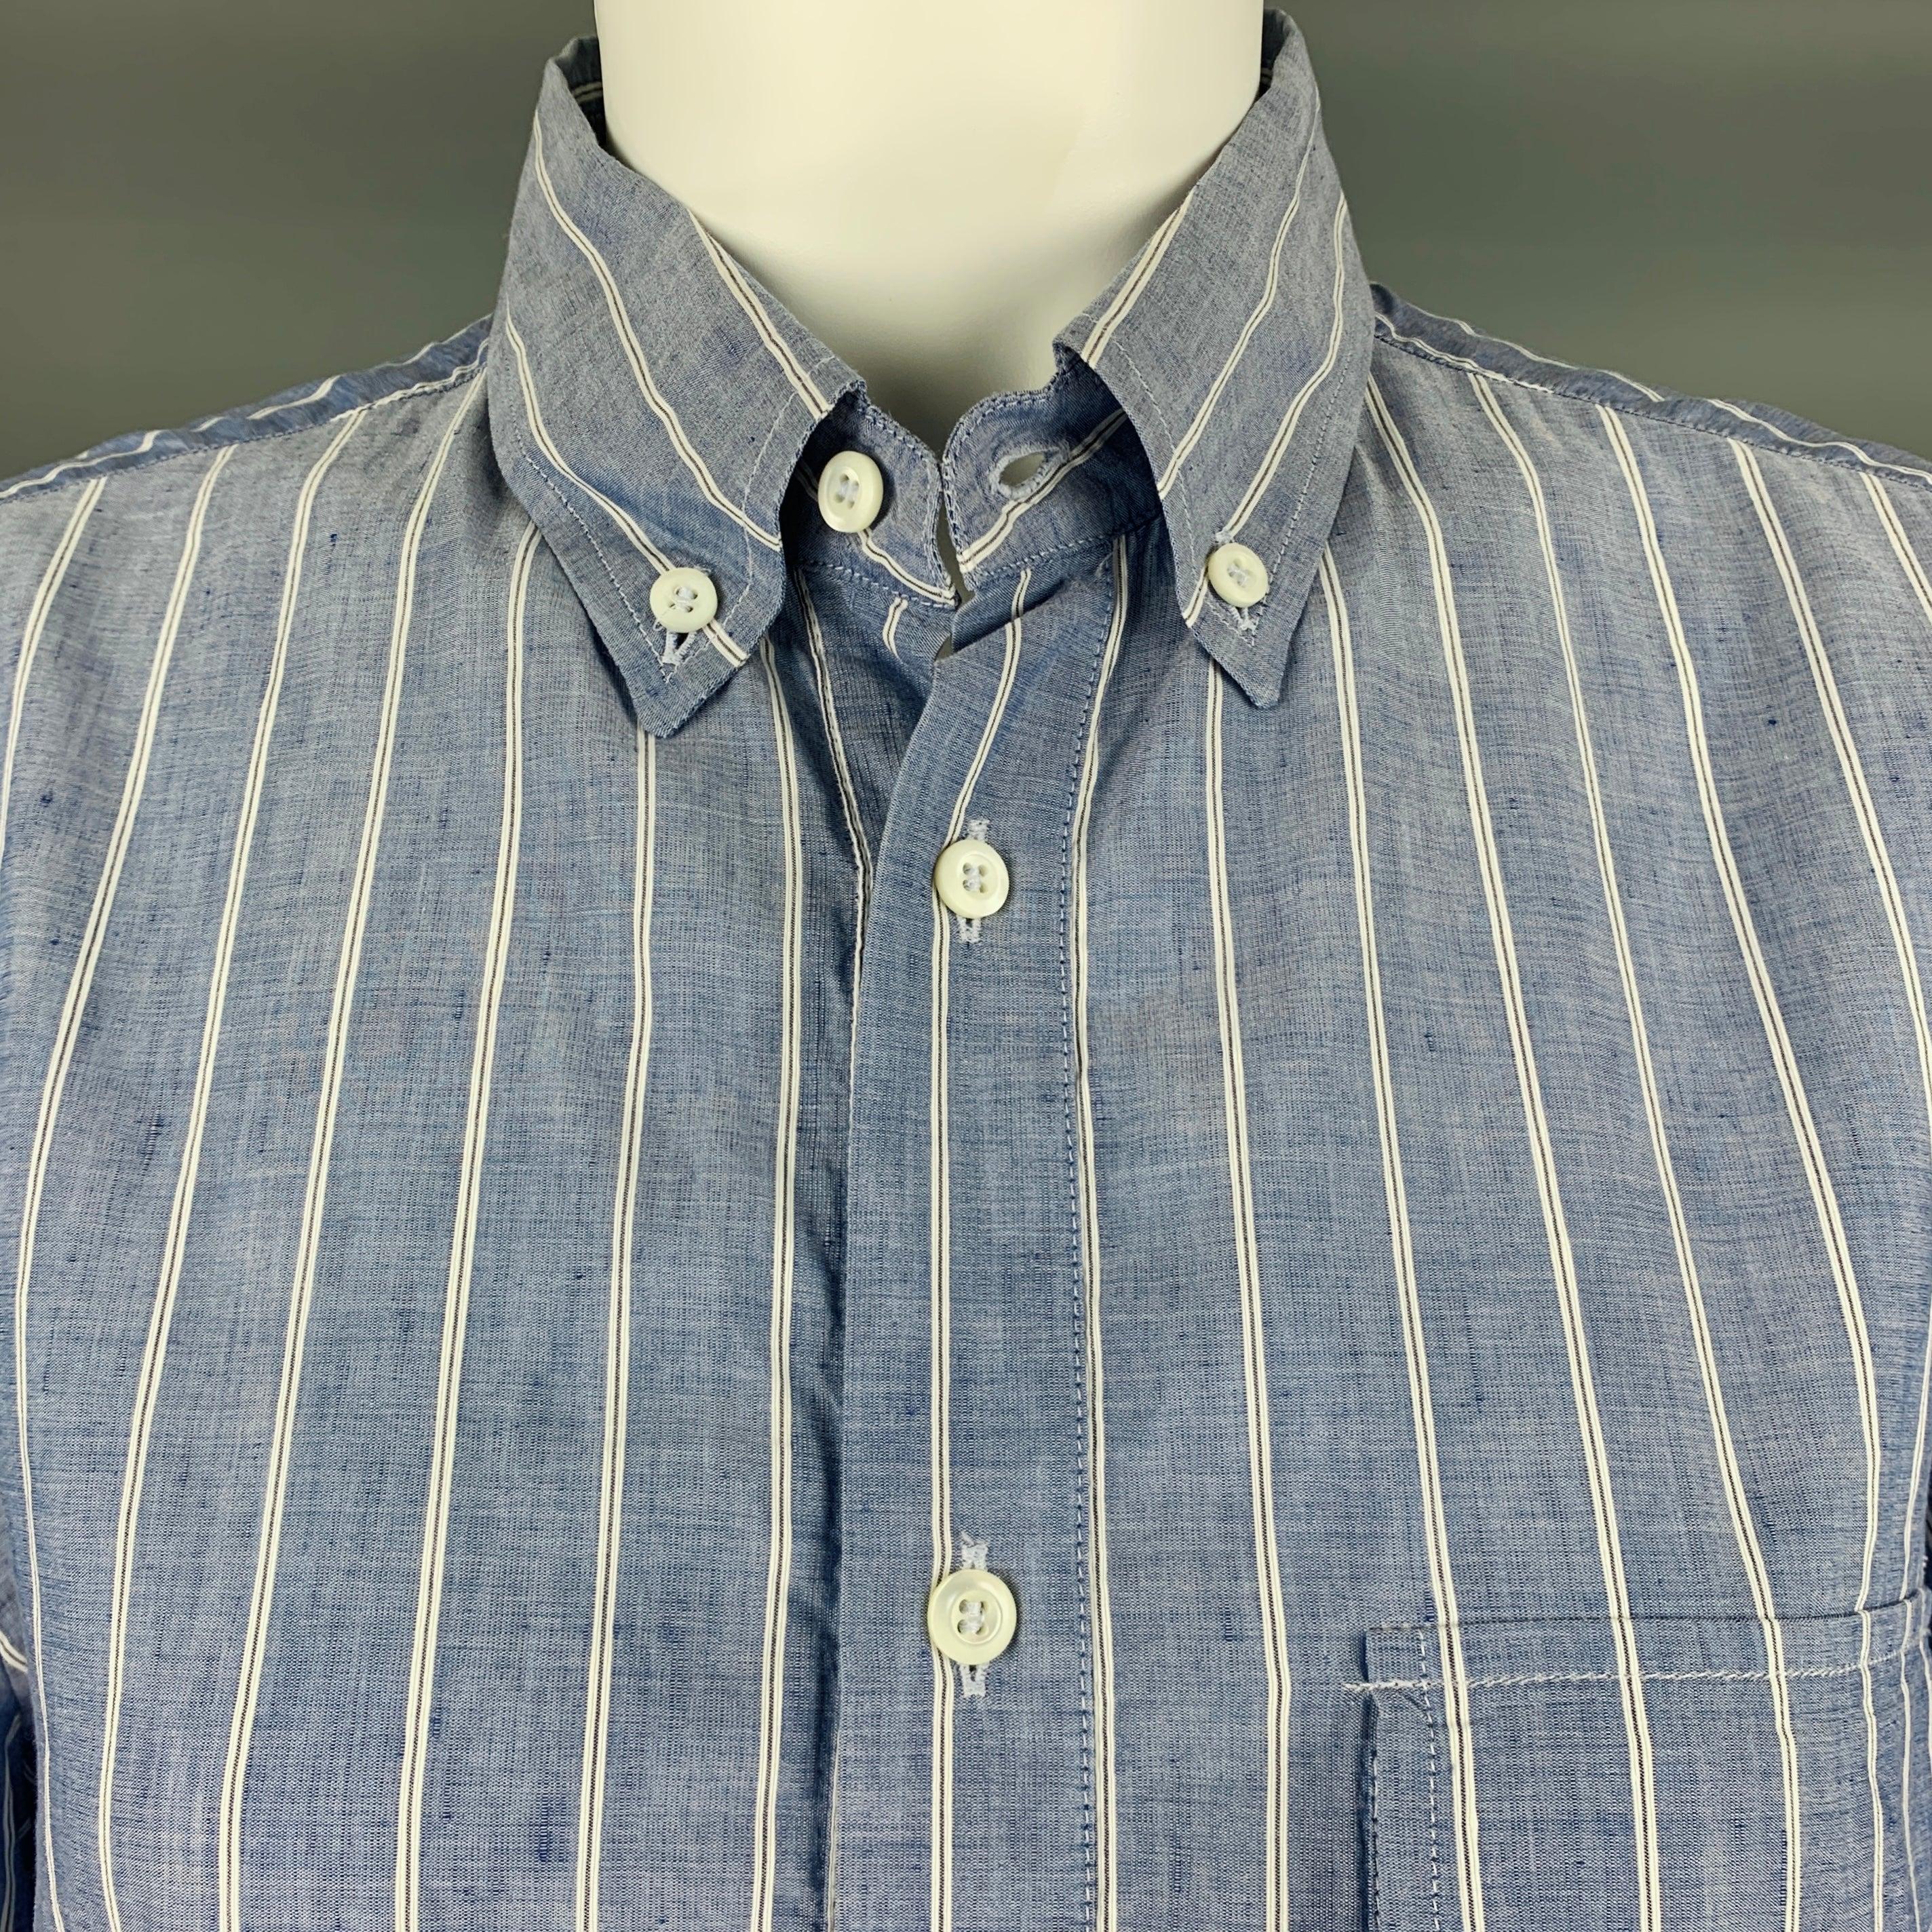 Chemise à manches longues BRUNELLO CUCINELLI
dans un
Tissu tissé bleu et blanc à motifs de rayures, col boutonné et longue patte de boutonnage. Fabriquées en Italie. Note : cet article a été modifié, veuillez vérifier les mesures. Les photos ont été